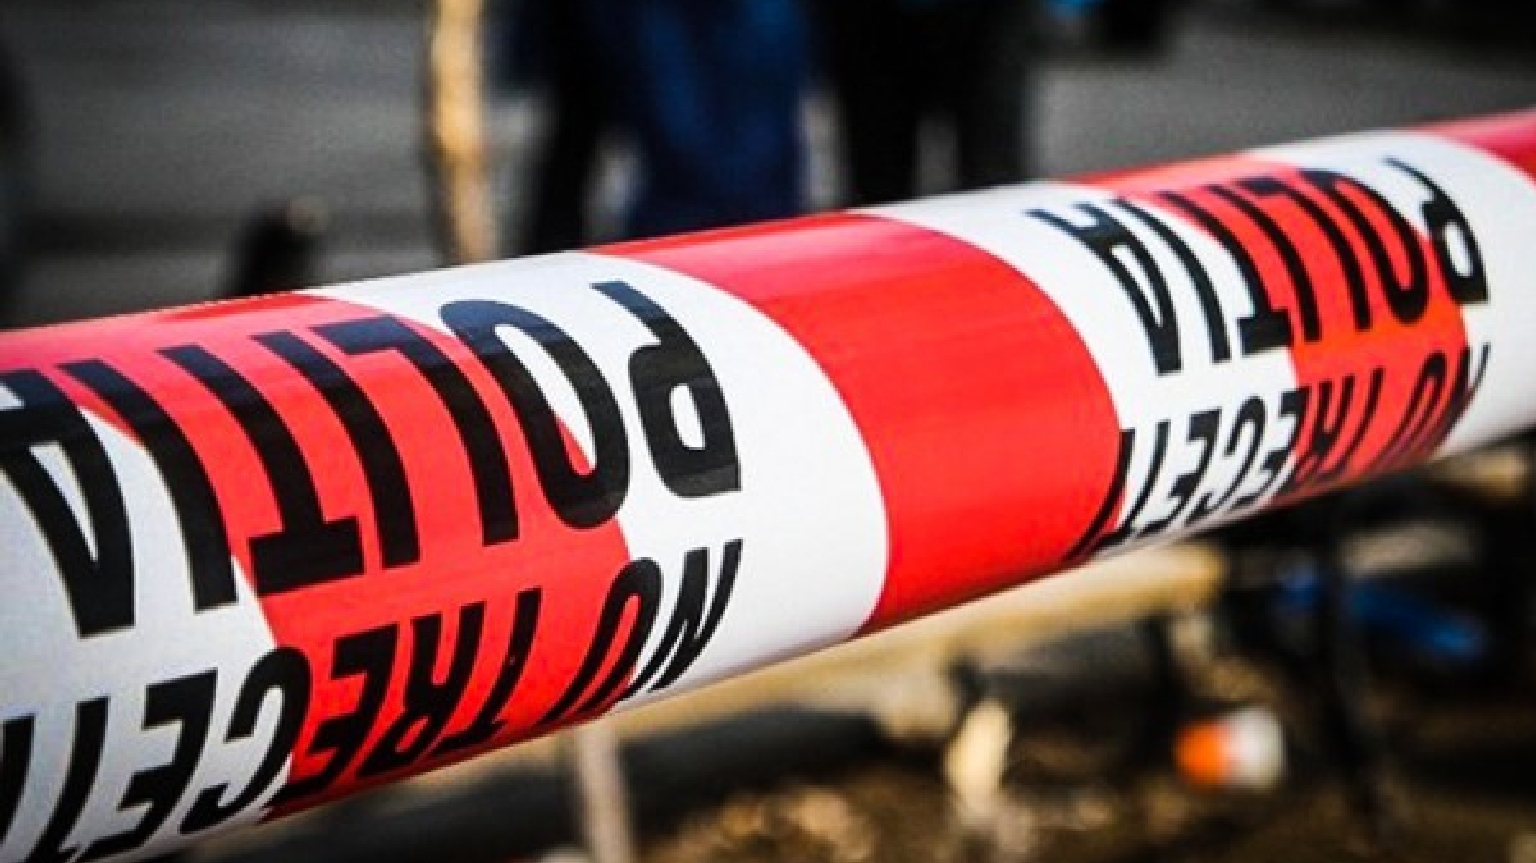 Sfârșit tragic pentru un copil de 13 ani dintr-o localitate din județul Sibiu. A fost găsit spânzurat în baie